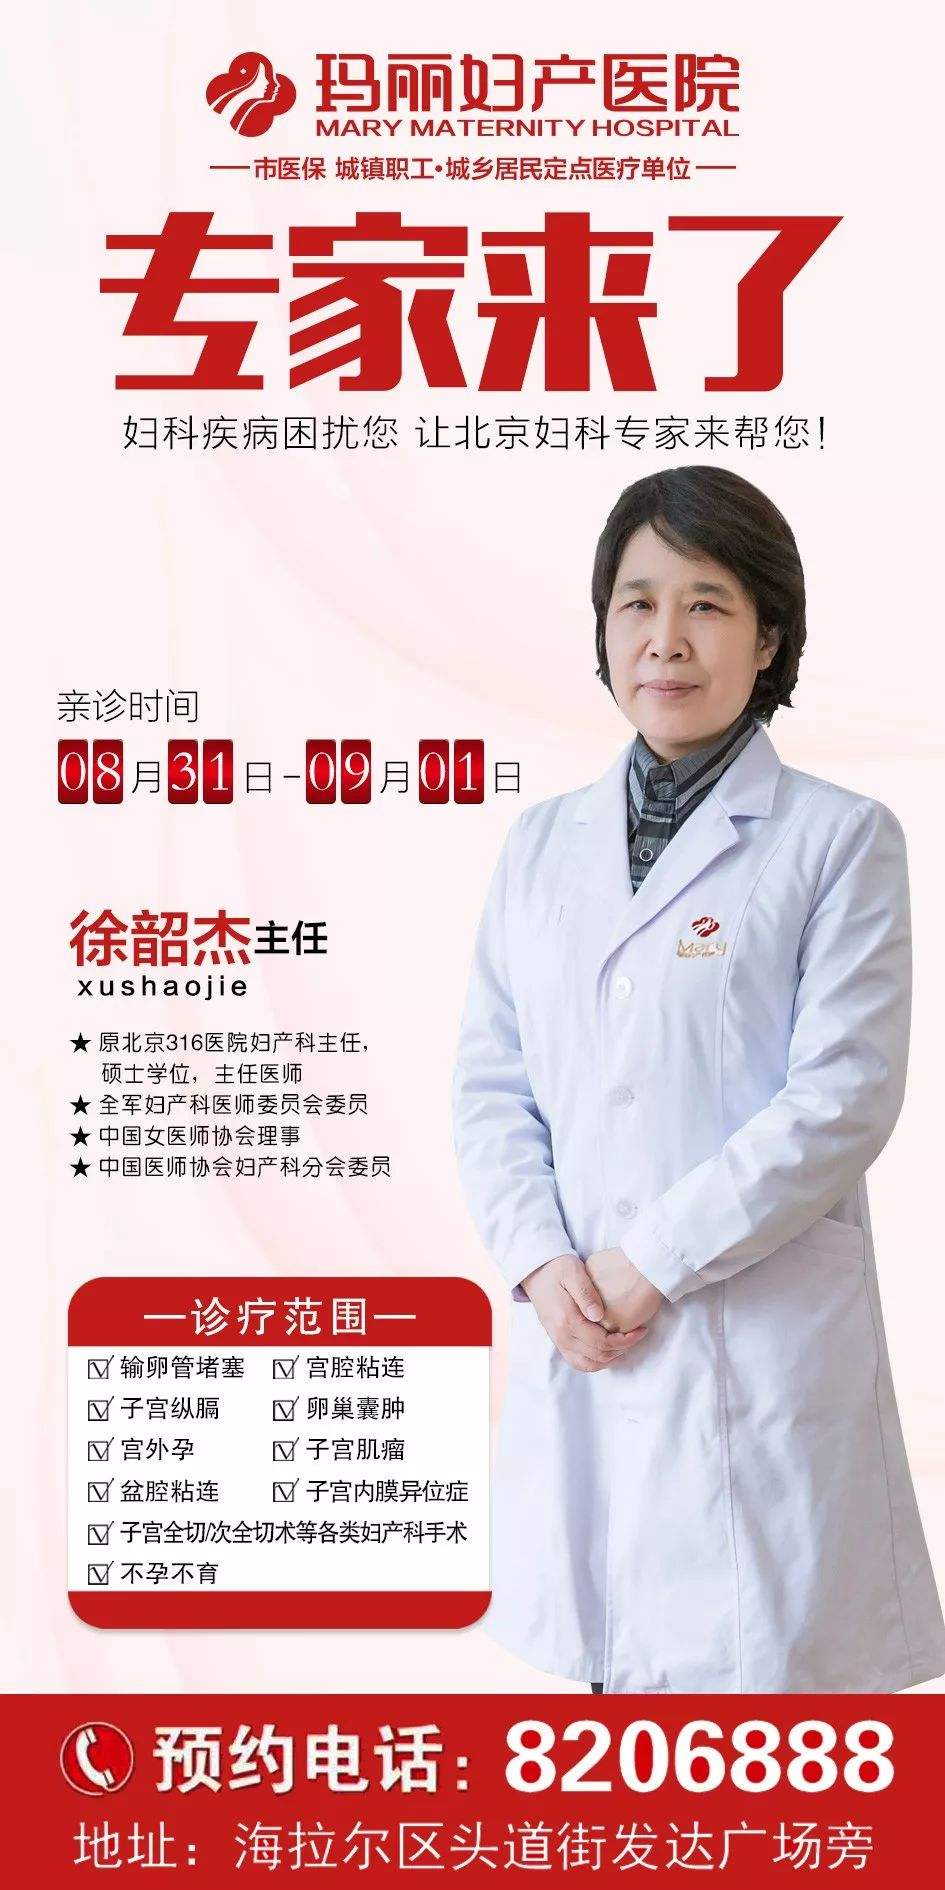 包含北京妇产医院跑腿代挂专家号，预约成功再收费